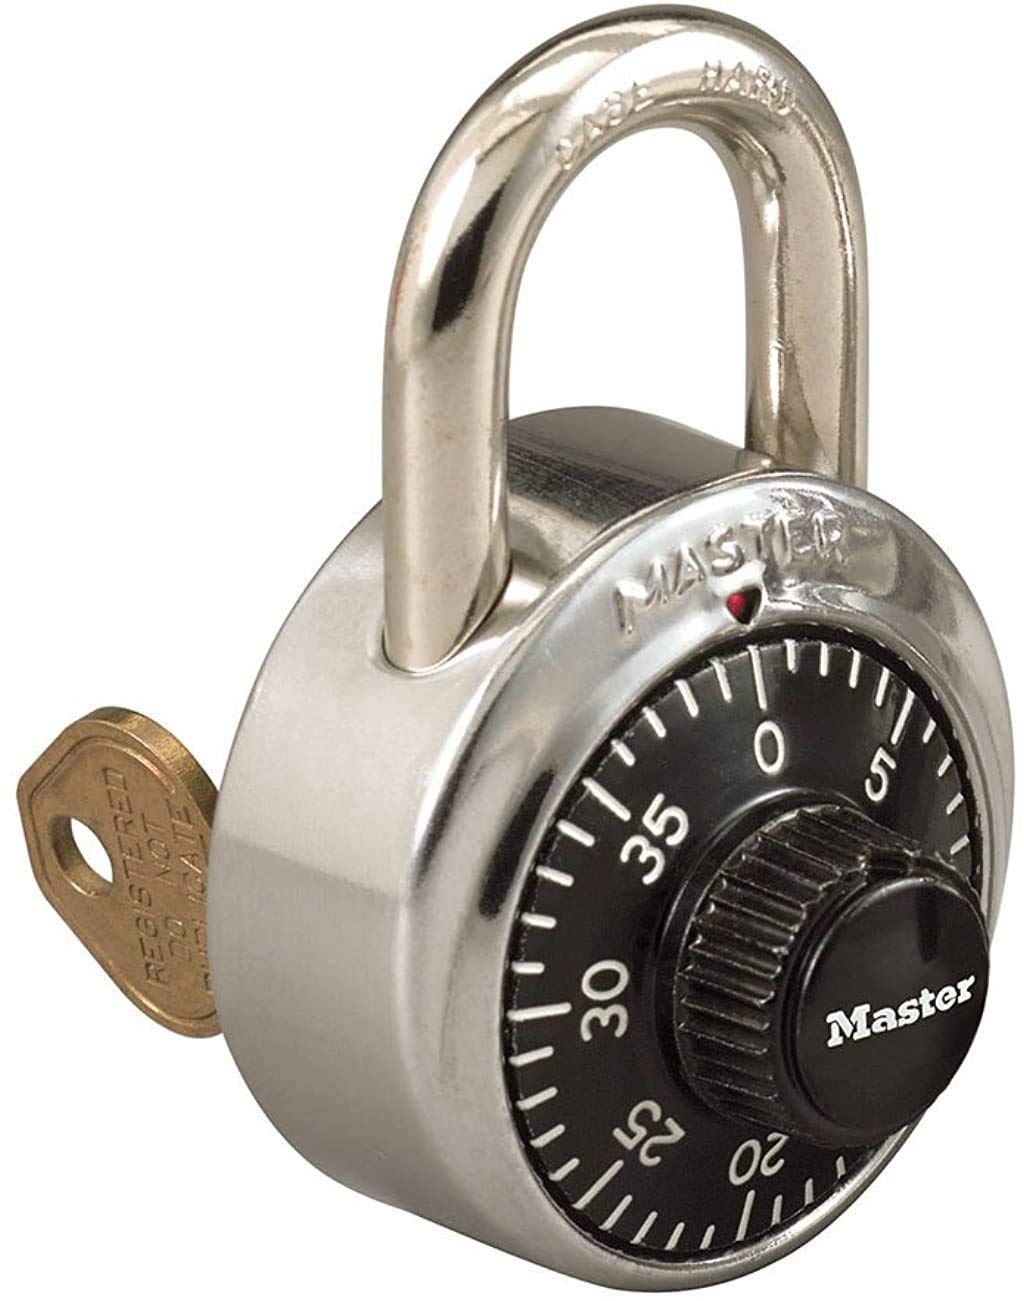 Locked padlock with a key